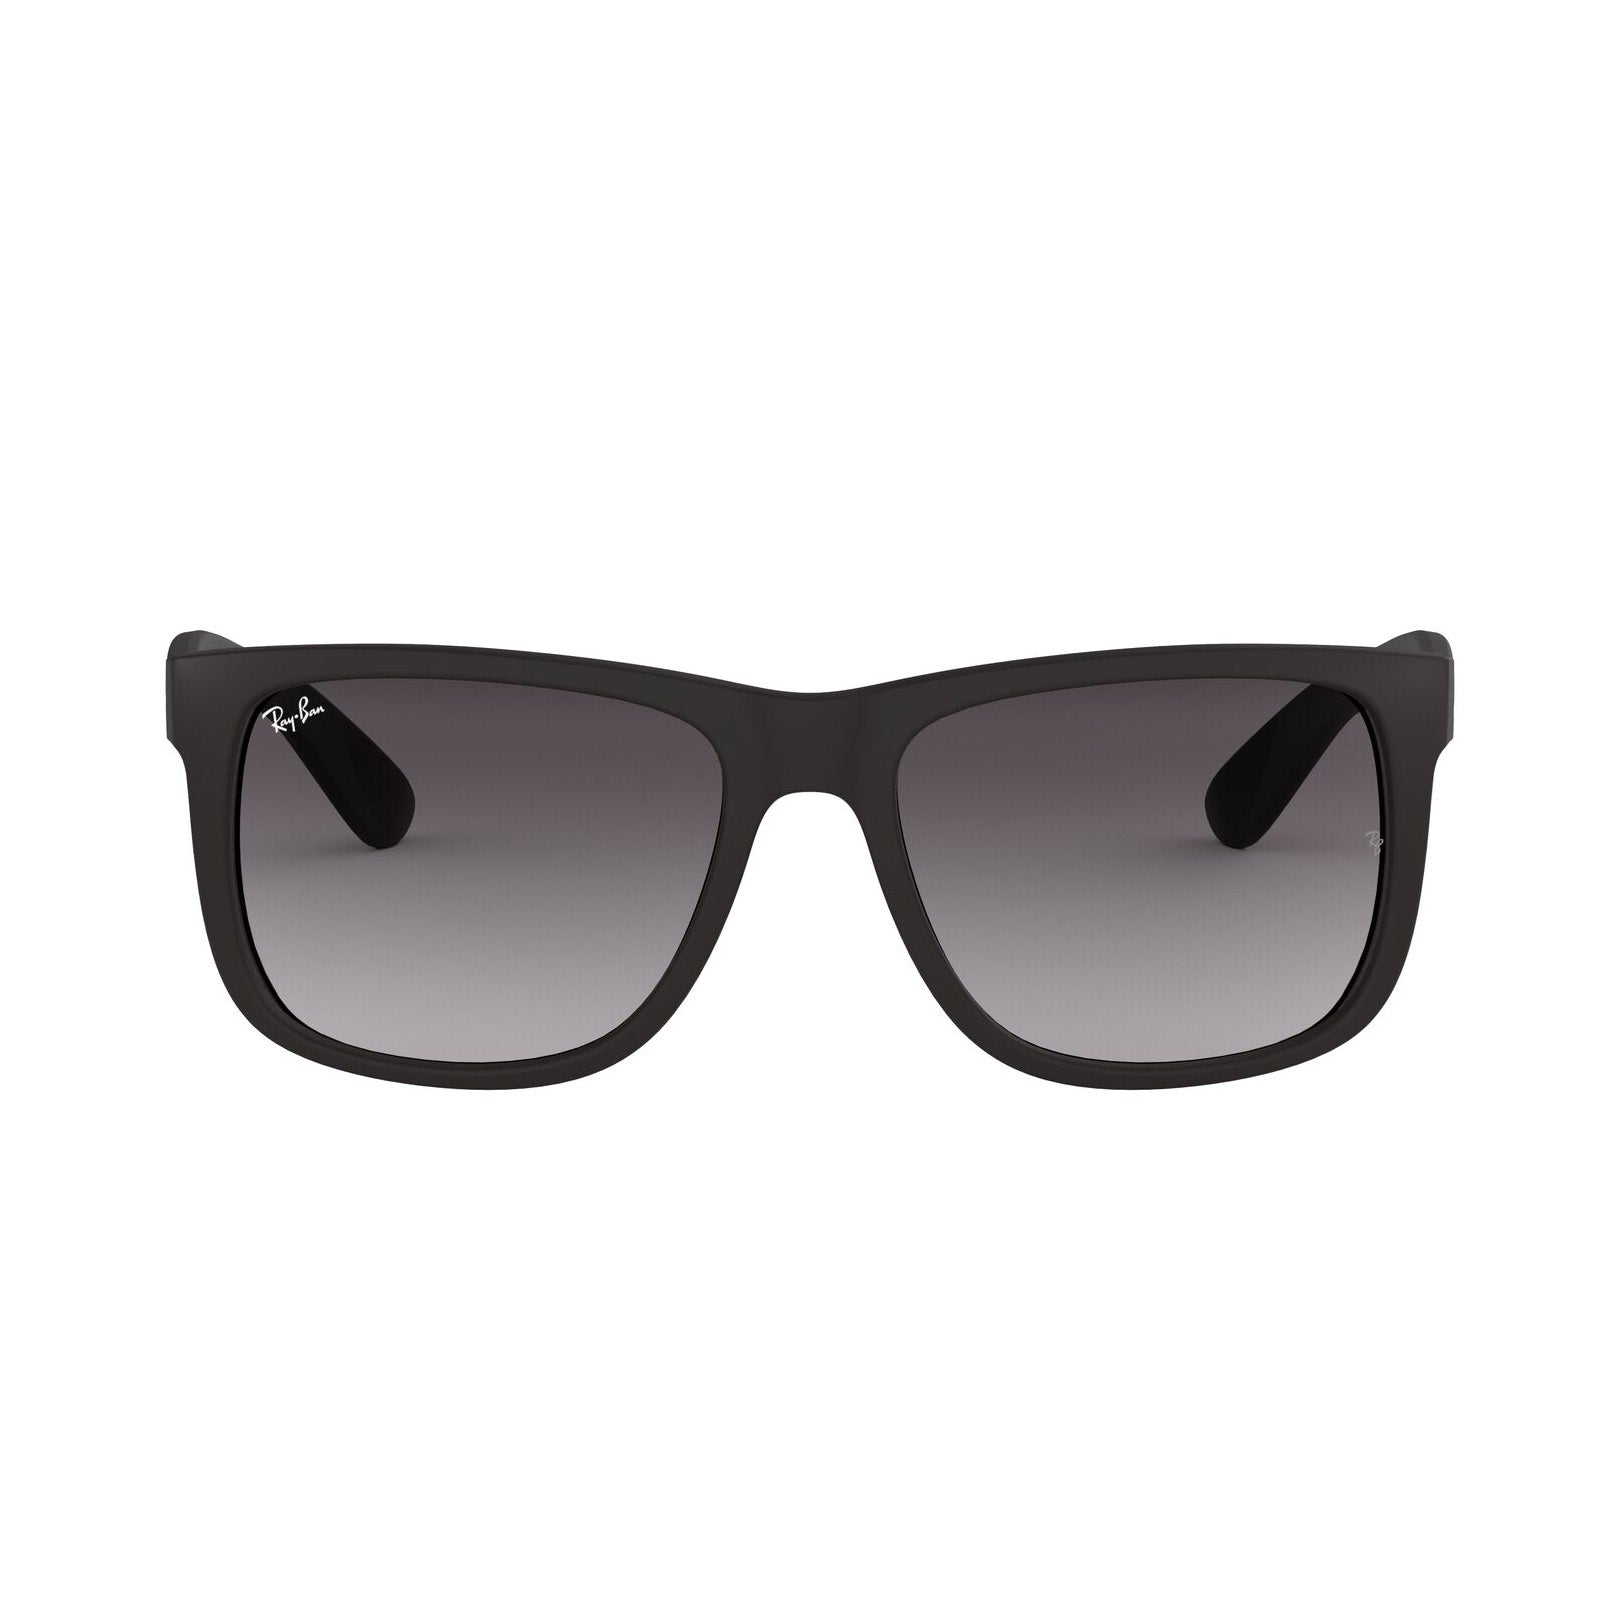 Versace VE4431 50 Dark Grey & Black Sunglasses | Sunglass Hut USA